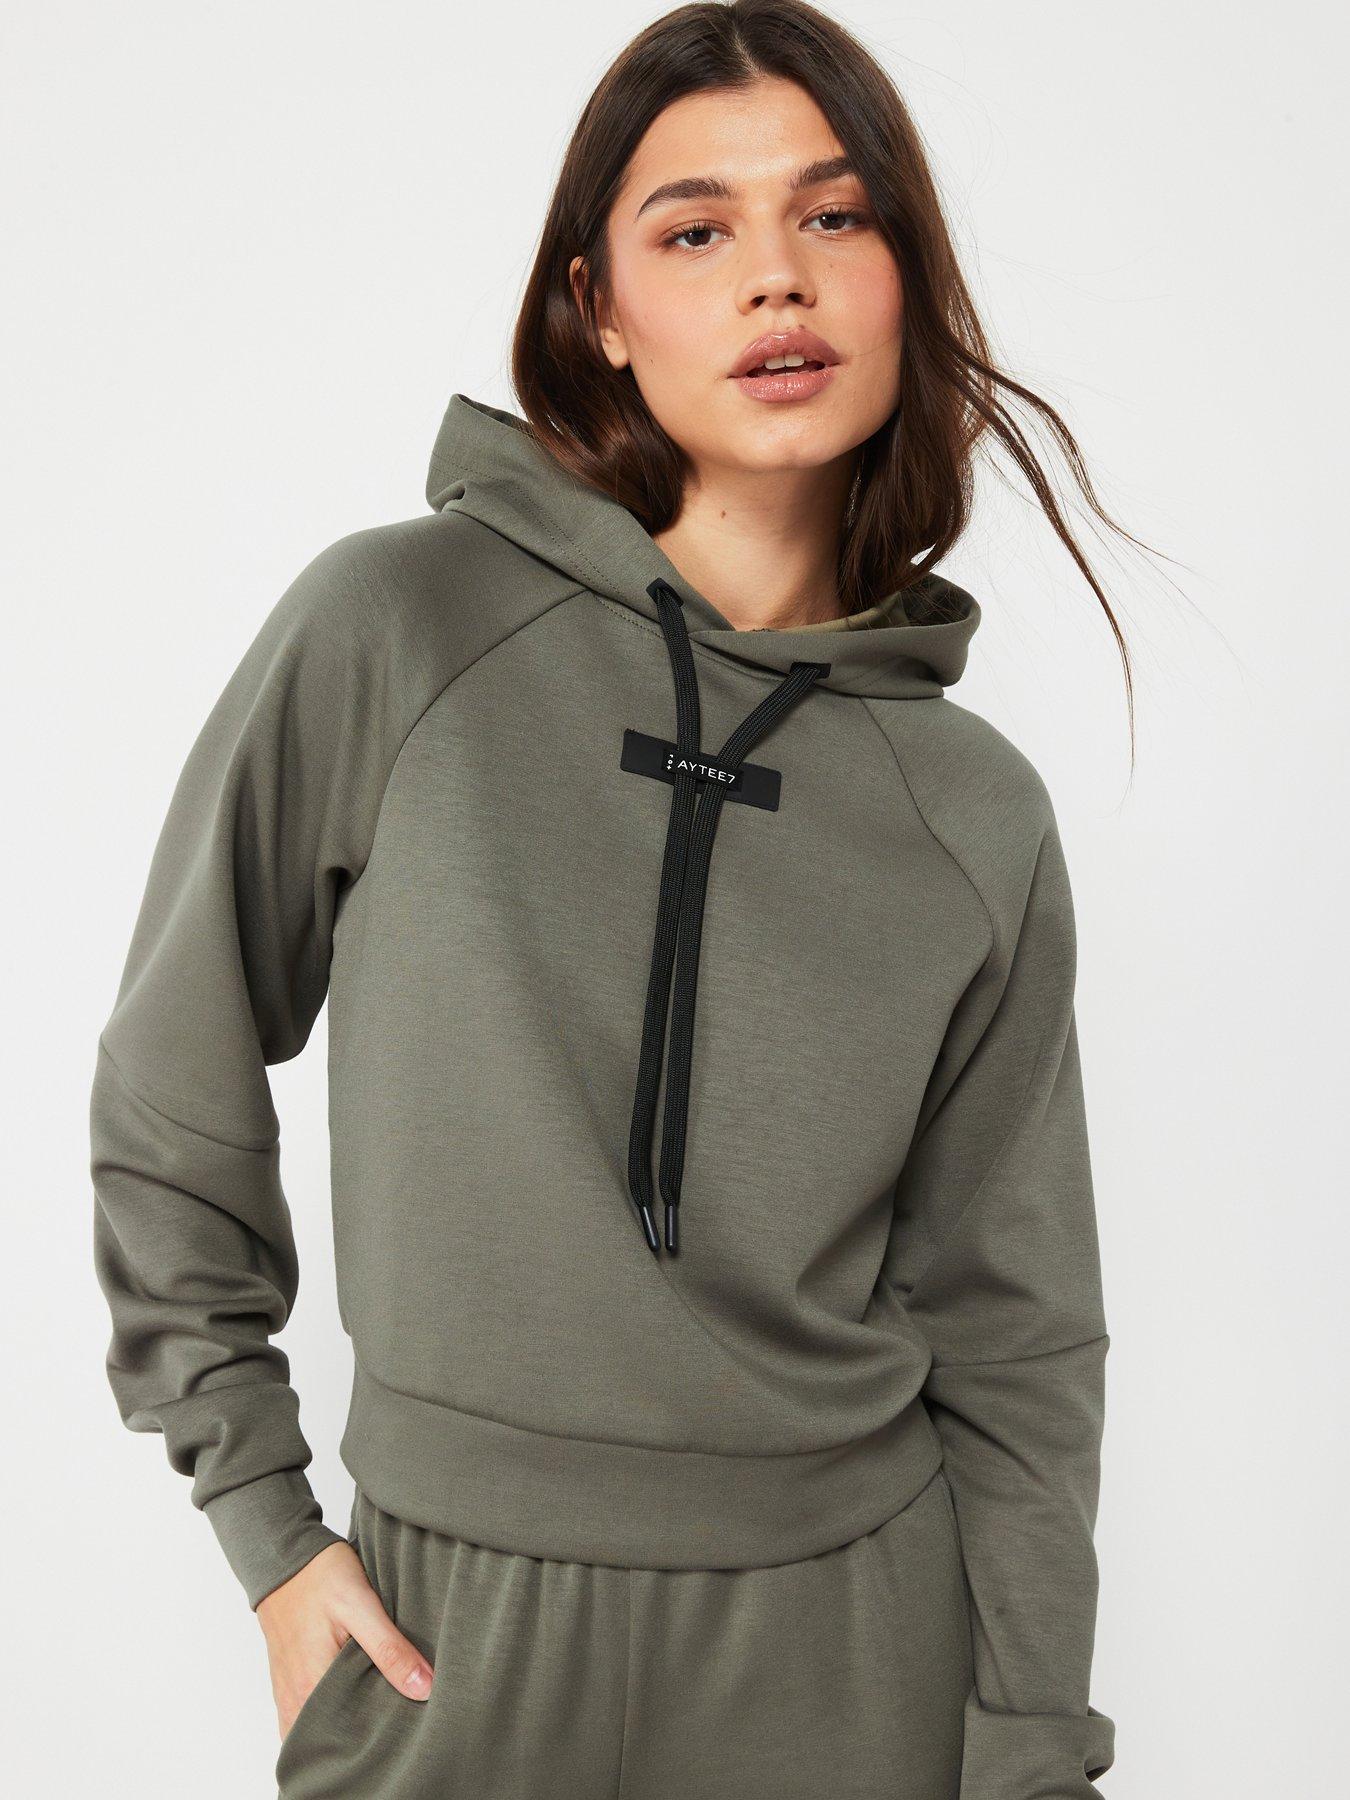 Women's Hoodies, Women's Sweatshirts